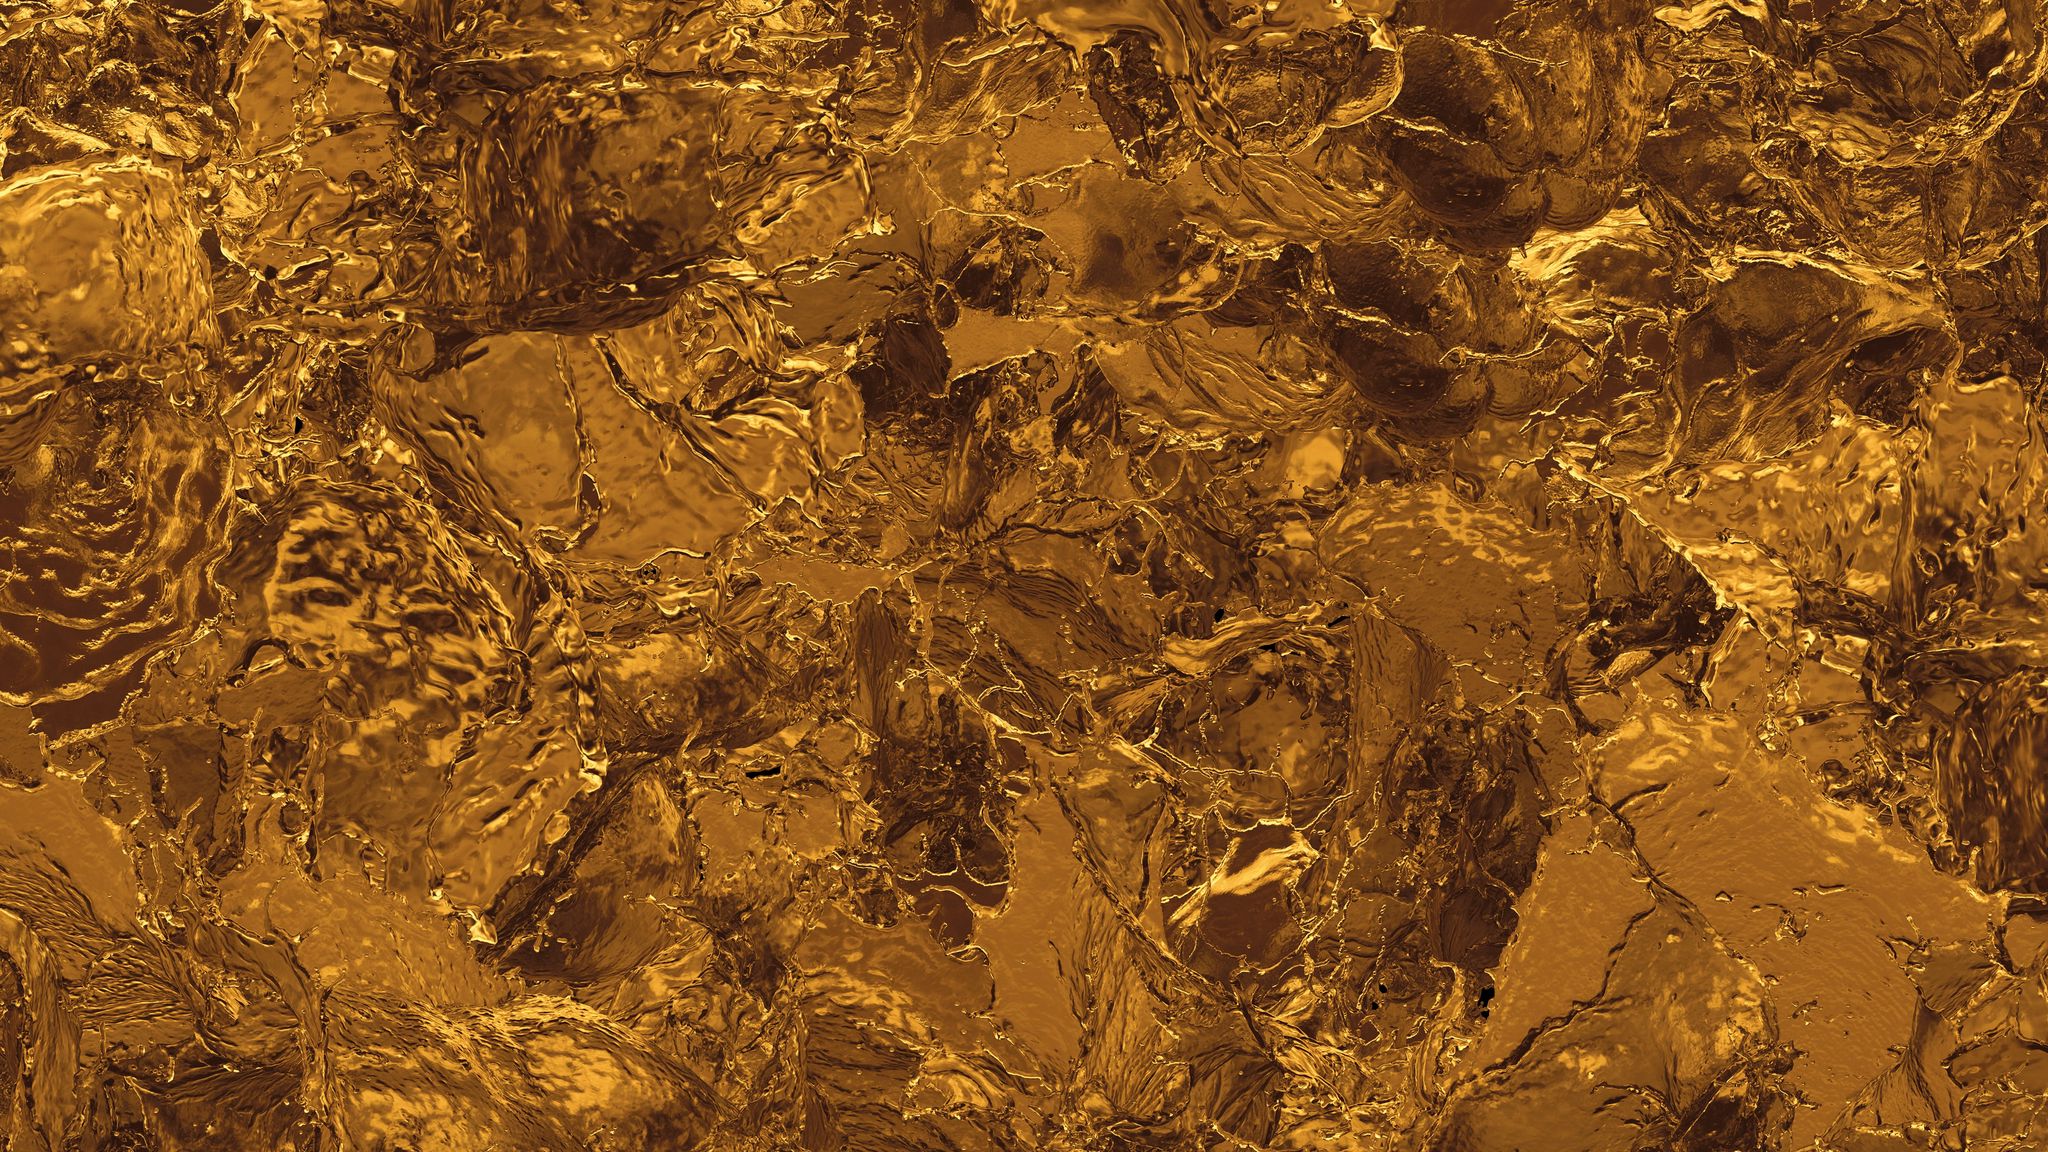 Gold Liquid Texture sẽ mang đến cho bạn một điều gì đó đặc biệt, với sự hoà trộn giữa chất lỏng và màu vàng làm nổi bật hình ảnh. Tuyệt vời cho ảnh sản phẩm hoặc ảnh chụp cảnh ngoài trời với ánh nắng vàng.